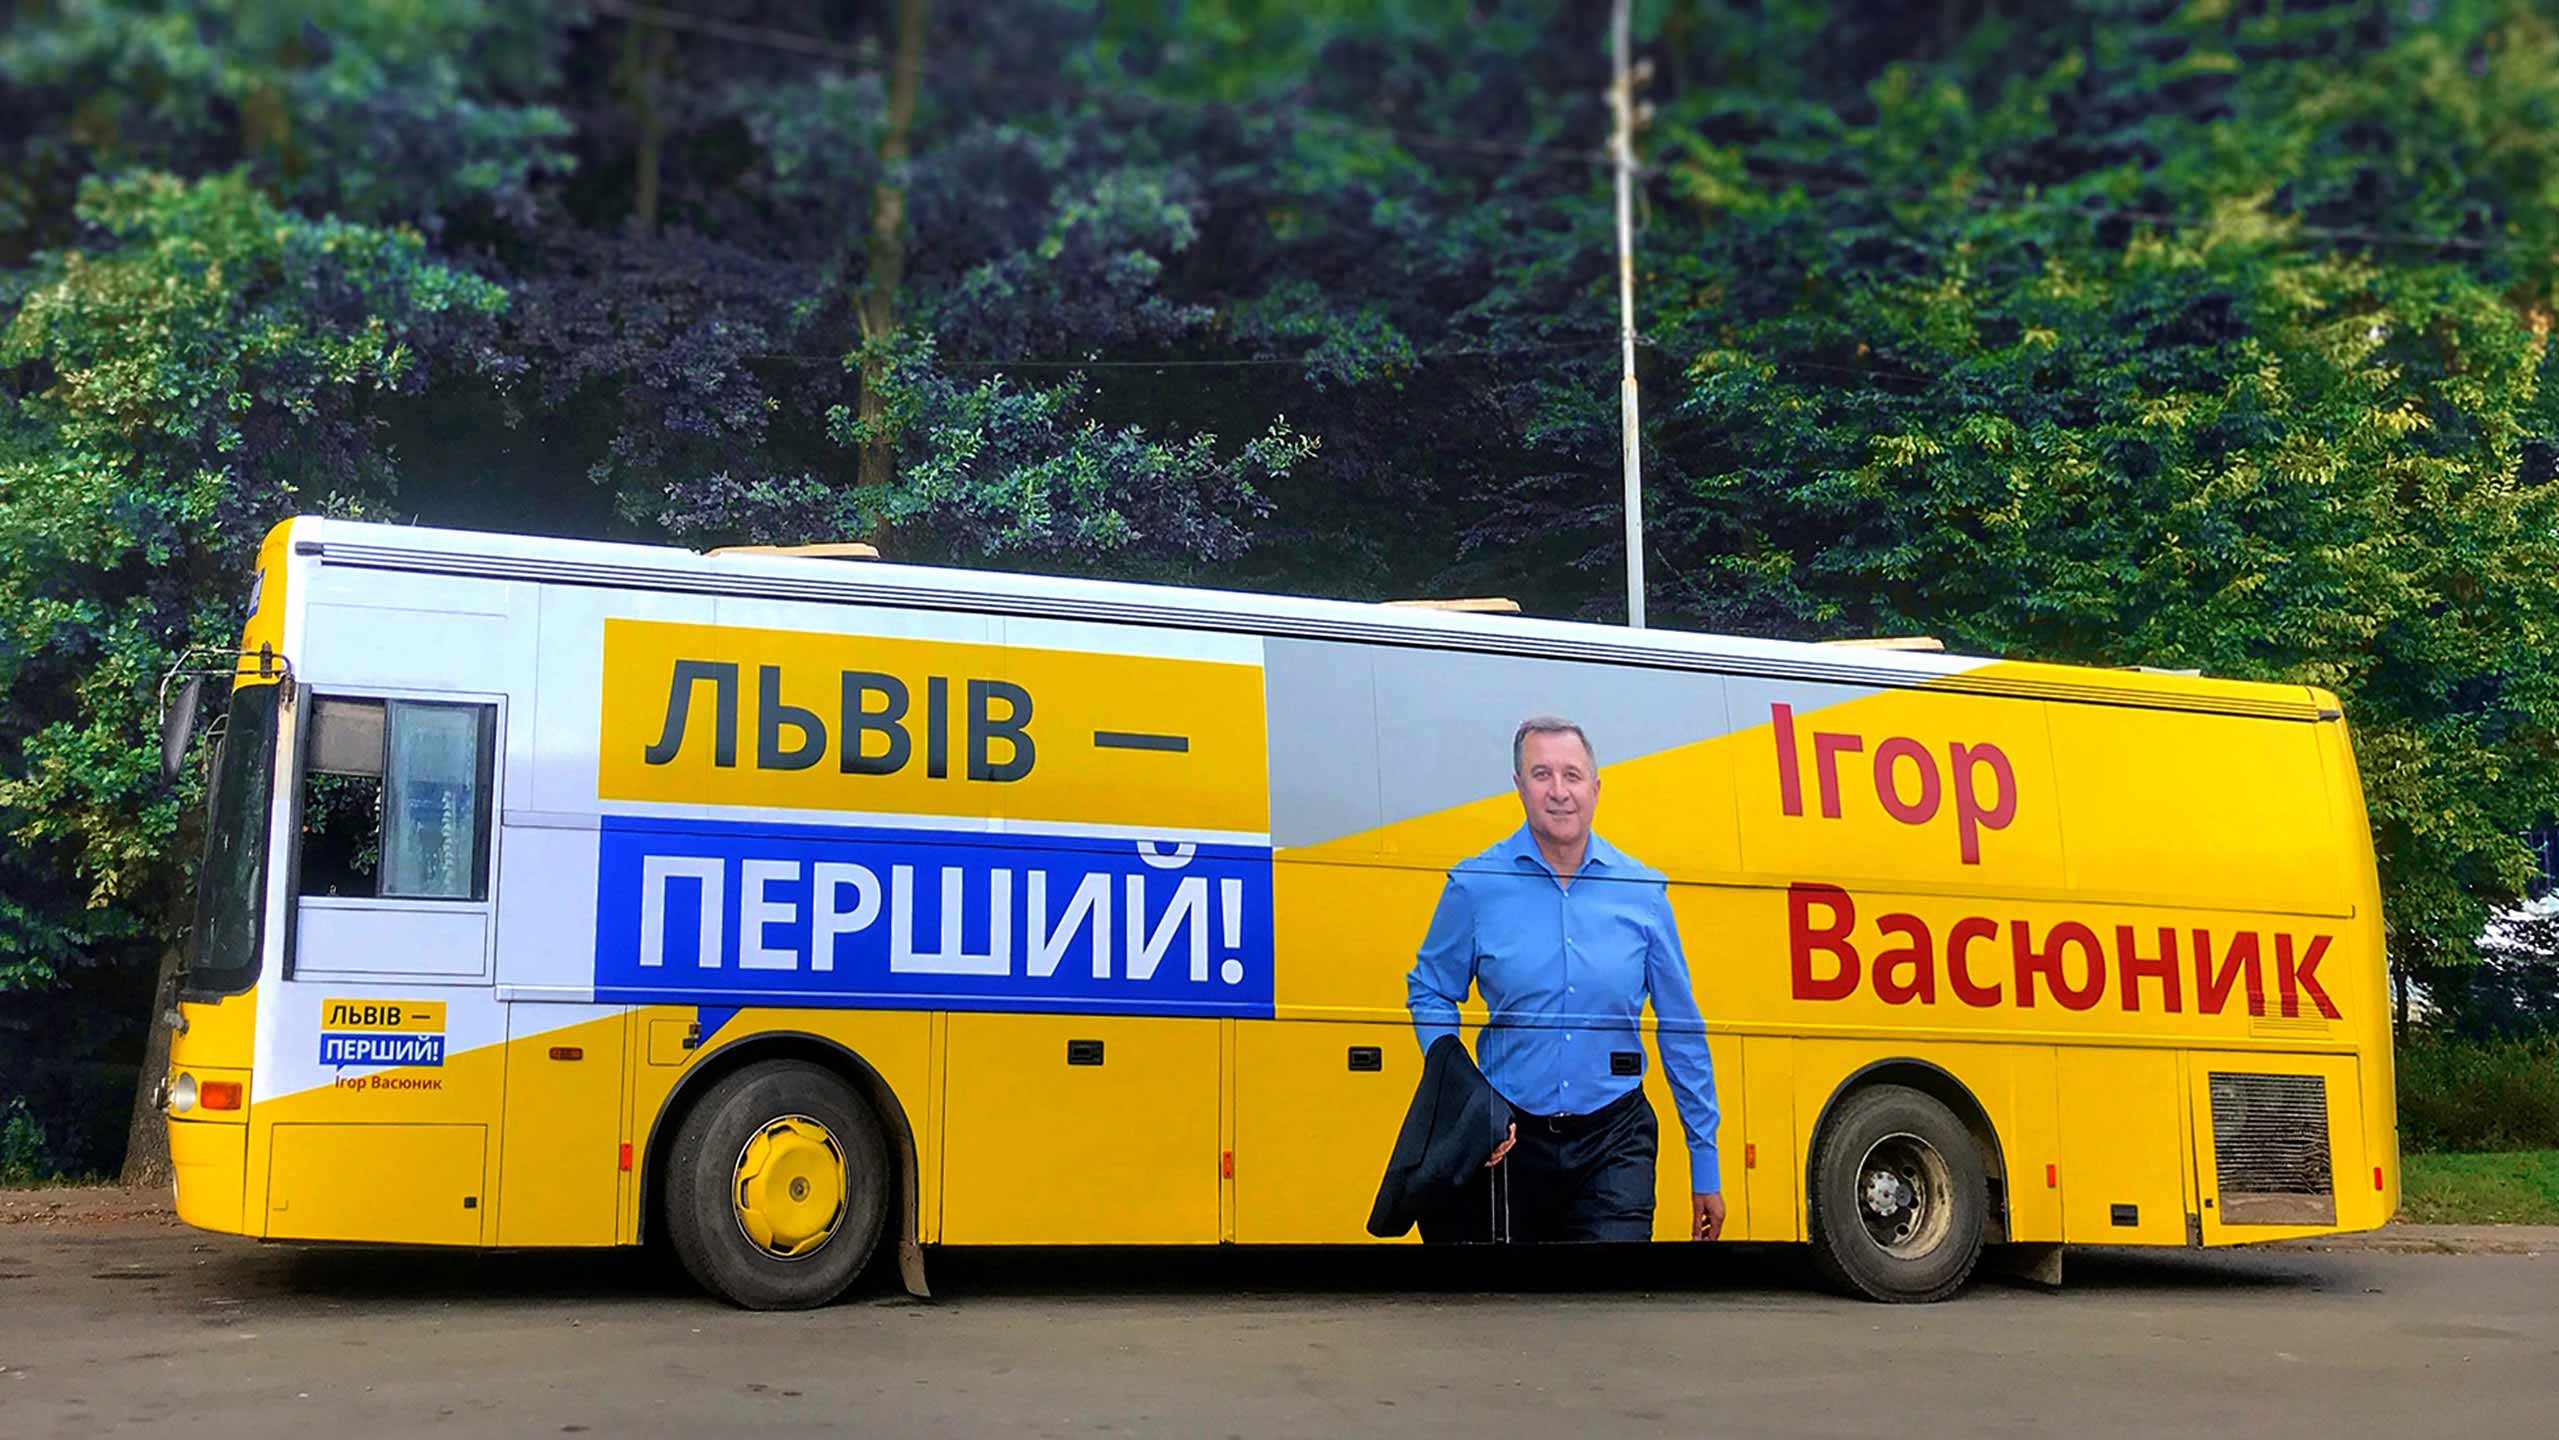 Политическая реклама на транспорте